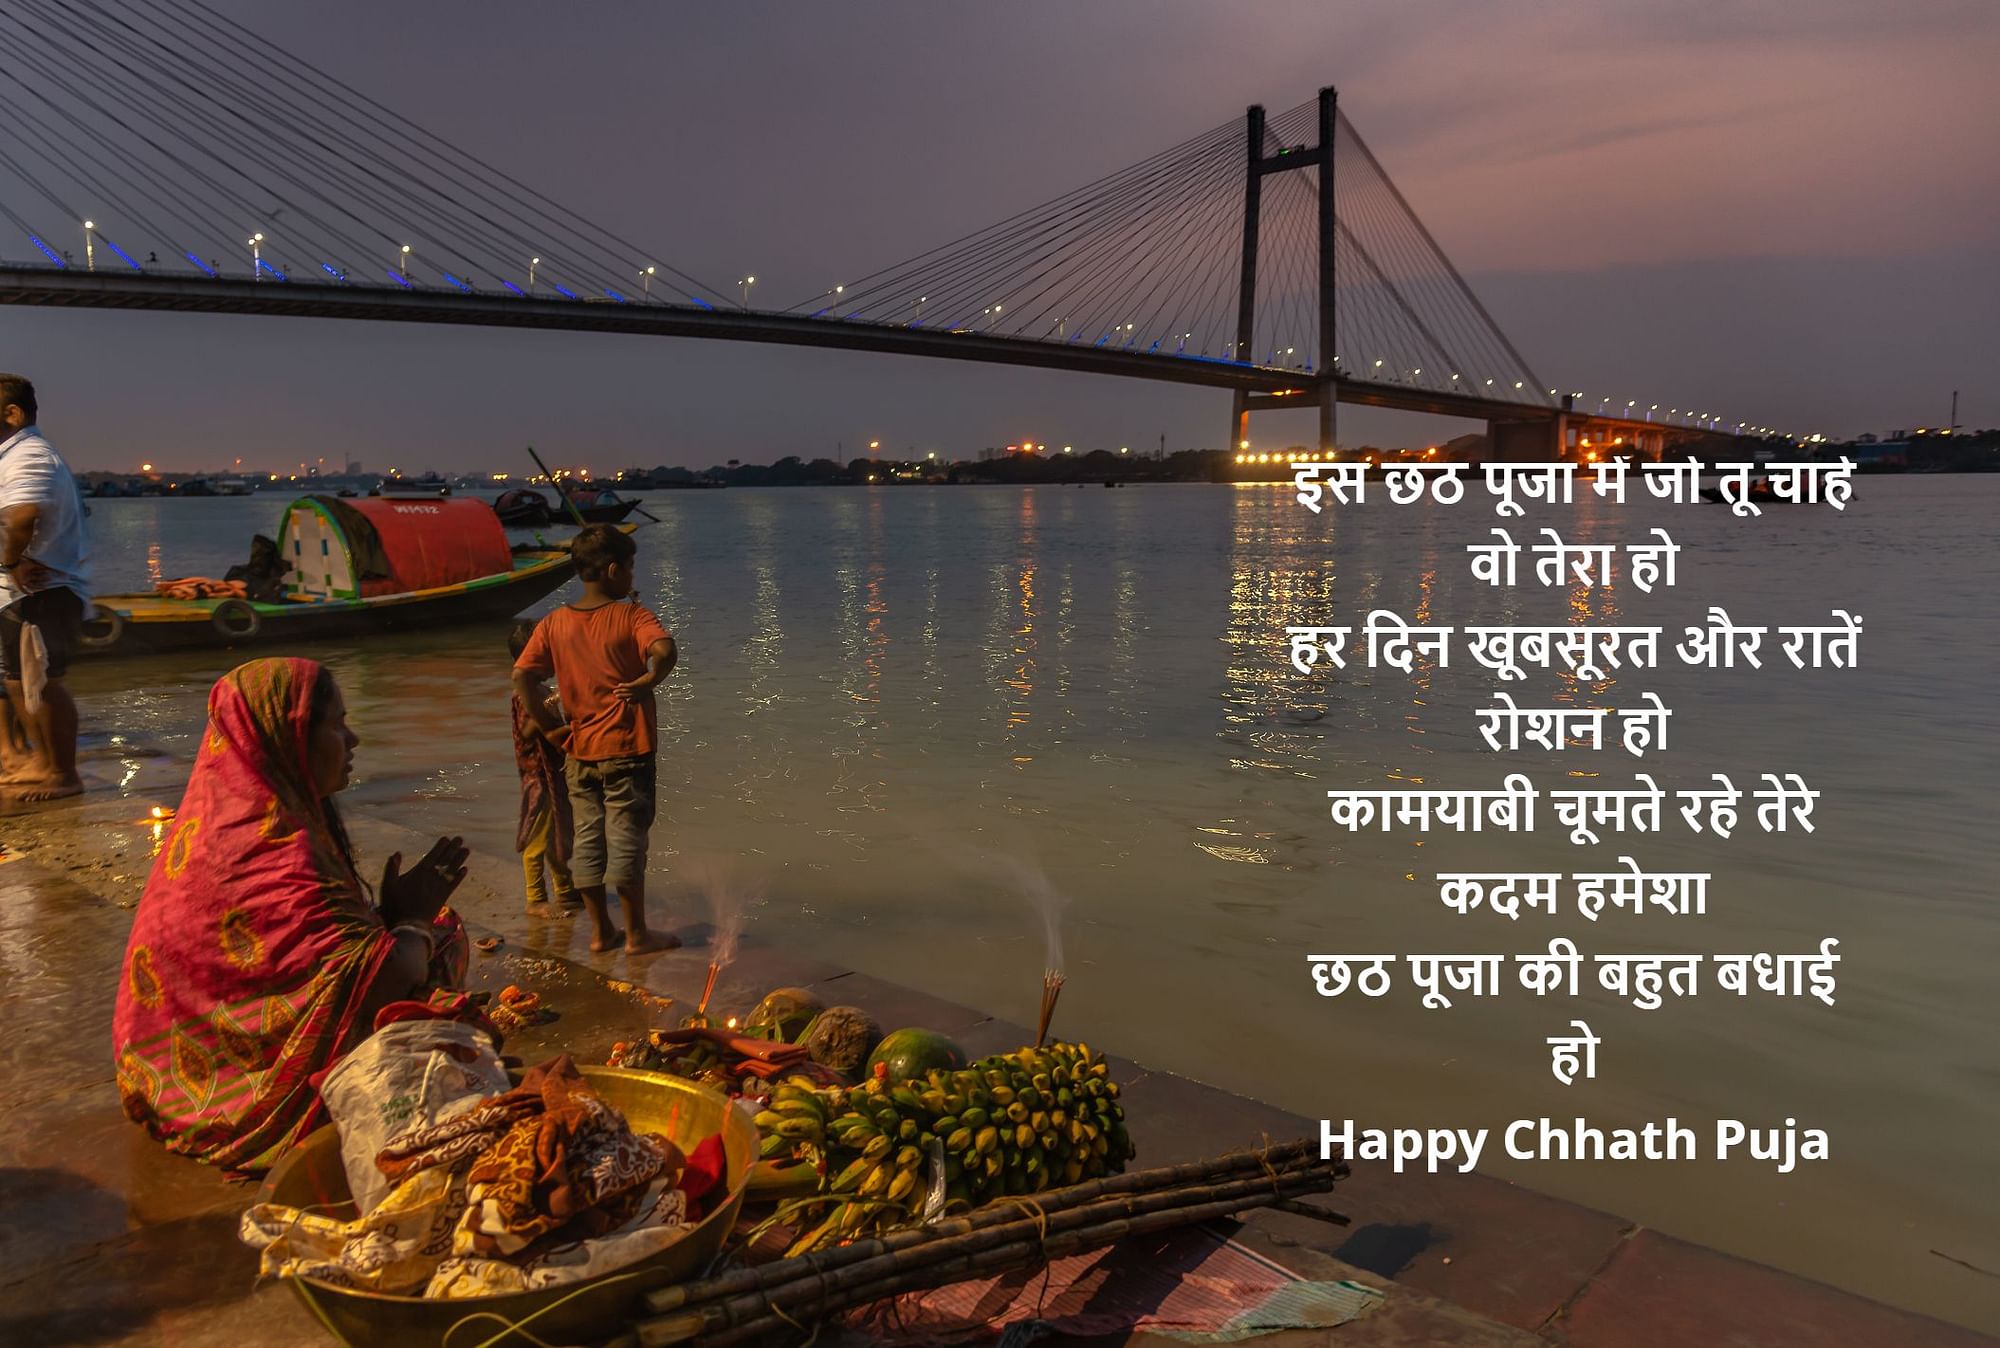 Happy Chhath Puja 2020 Wishes In Hindi,Bhojpuri,English, Chhath Puja